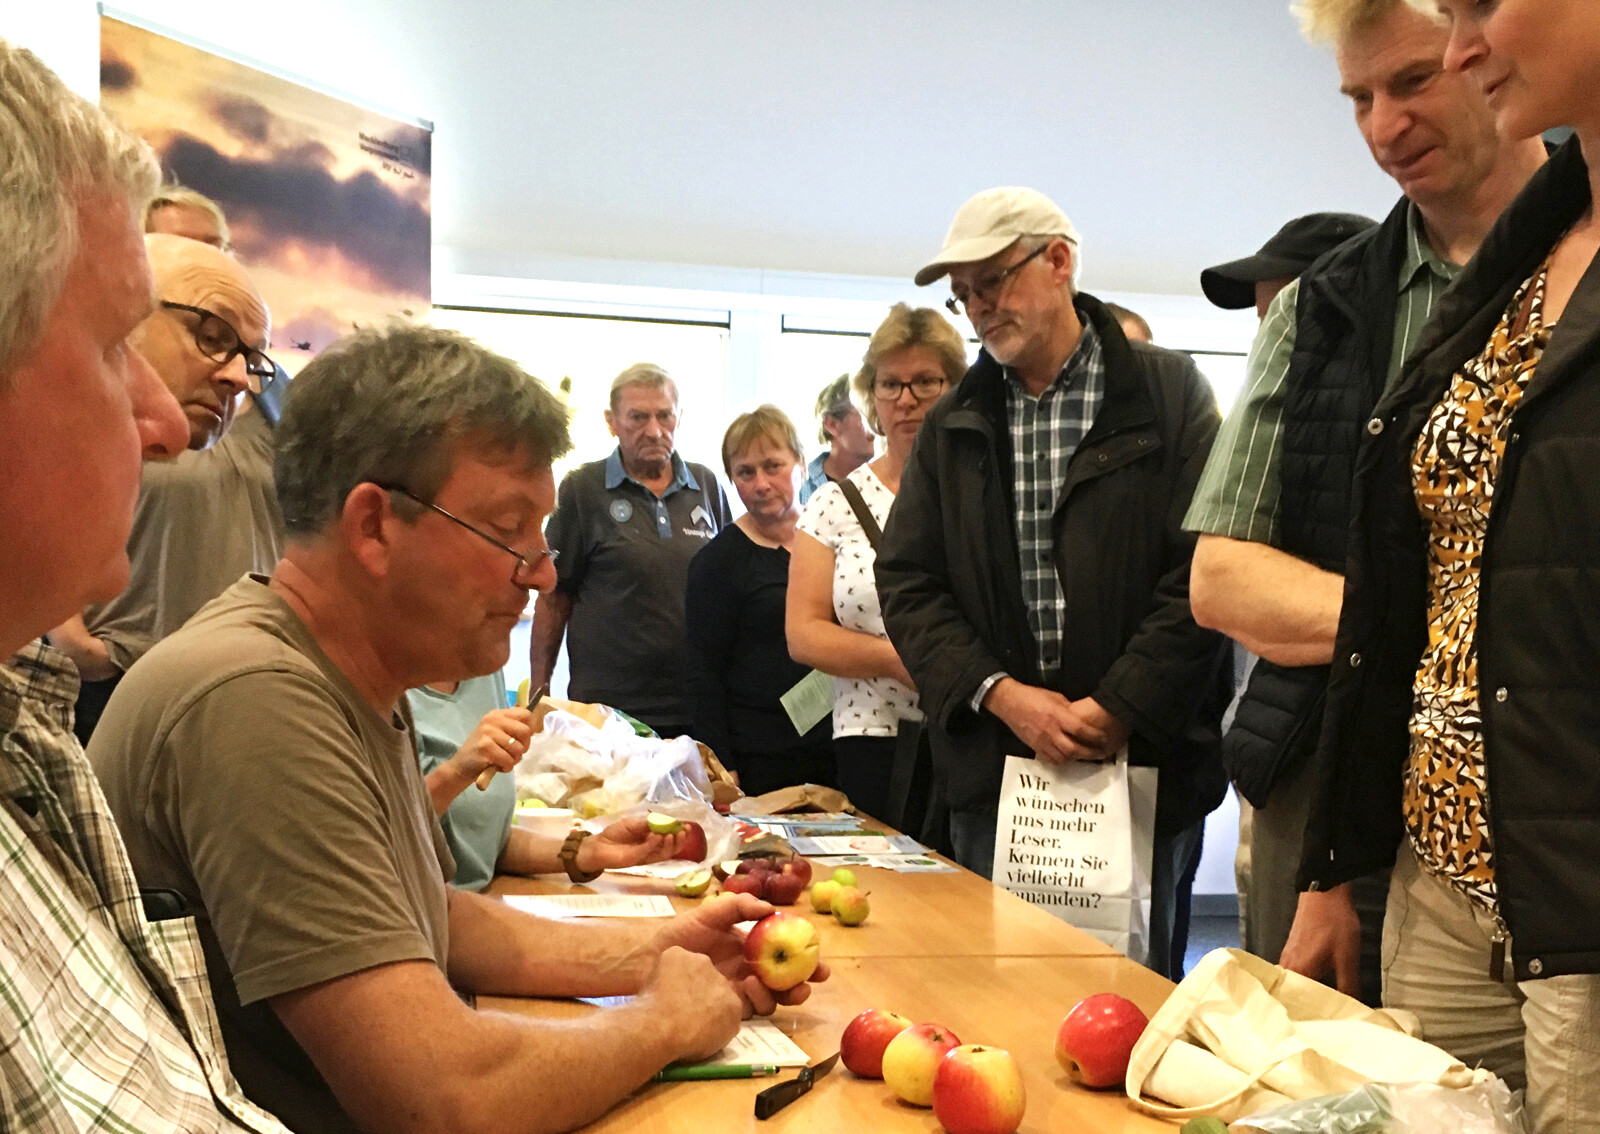 Foto: Apfelsortenbestimmung mit dem Pomologen Jens Meyer im Informationszentrum PAHLHUUS. Fotoautor: Frank Hermann